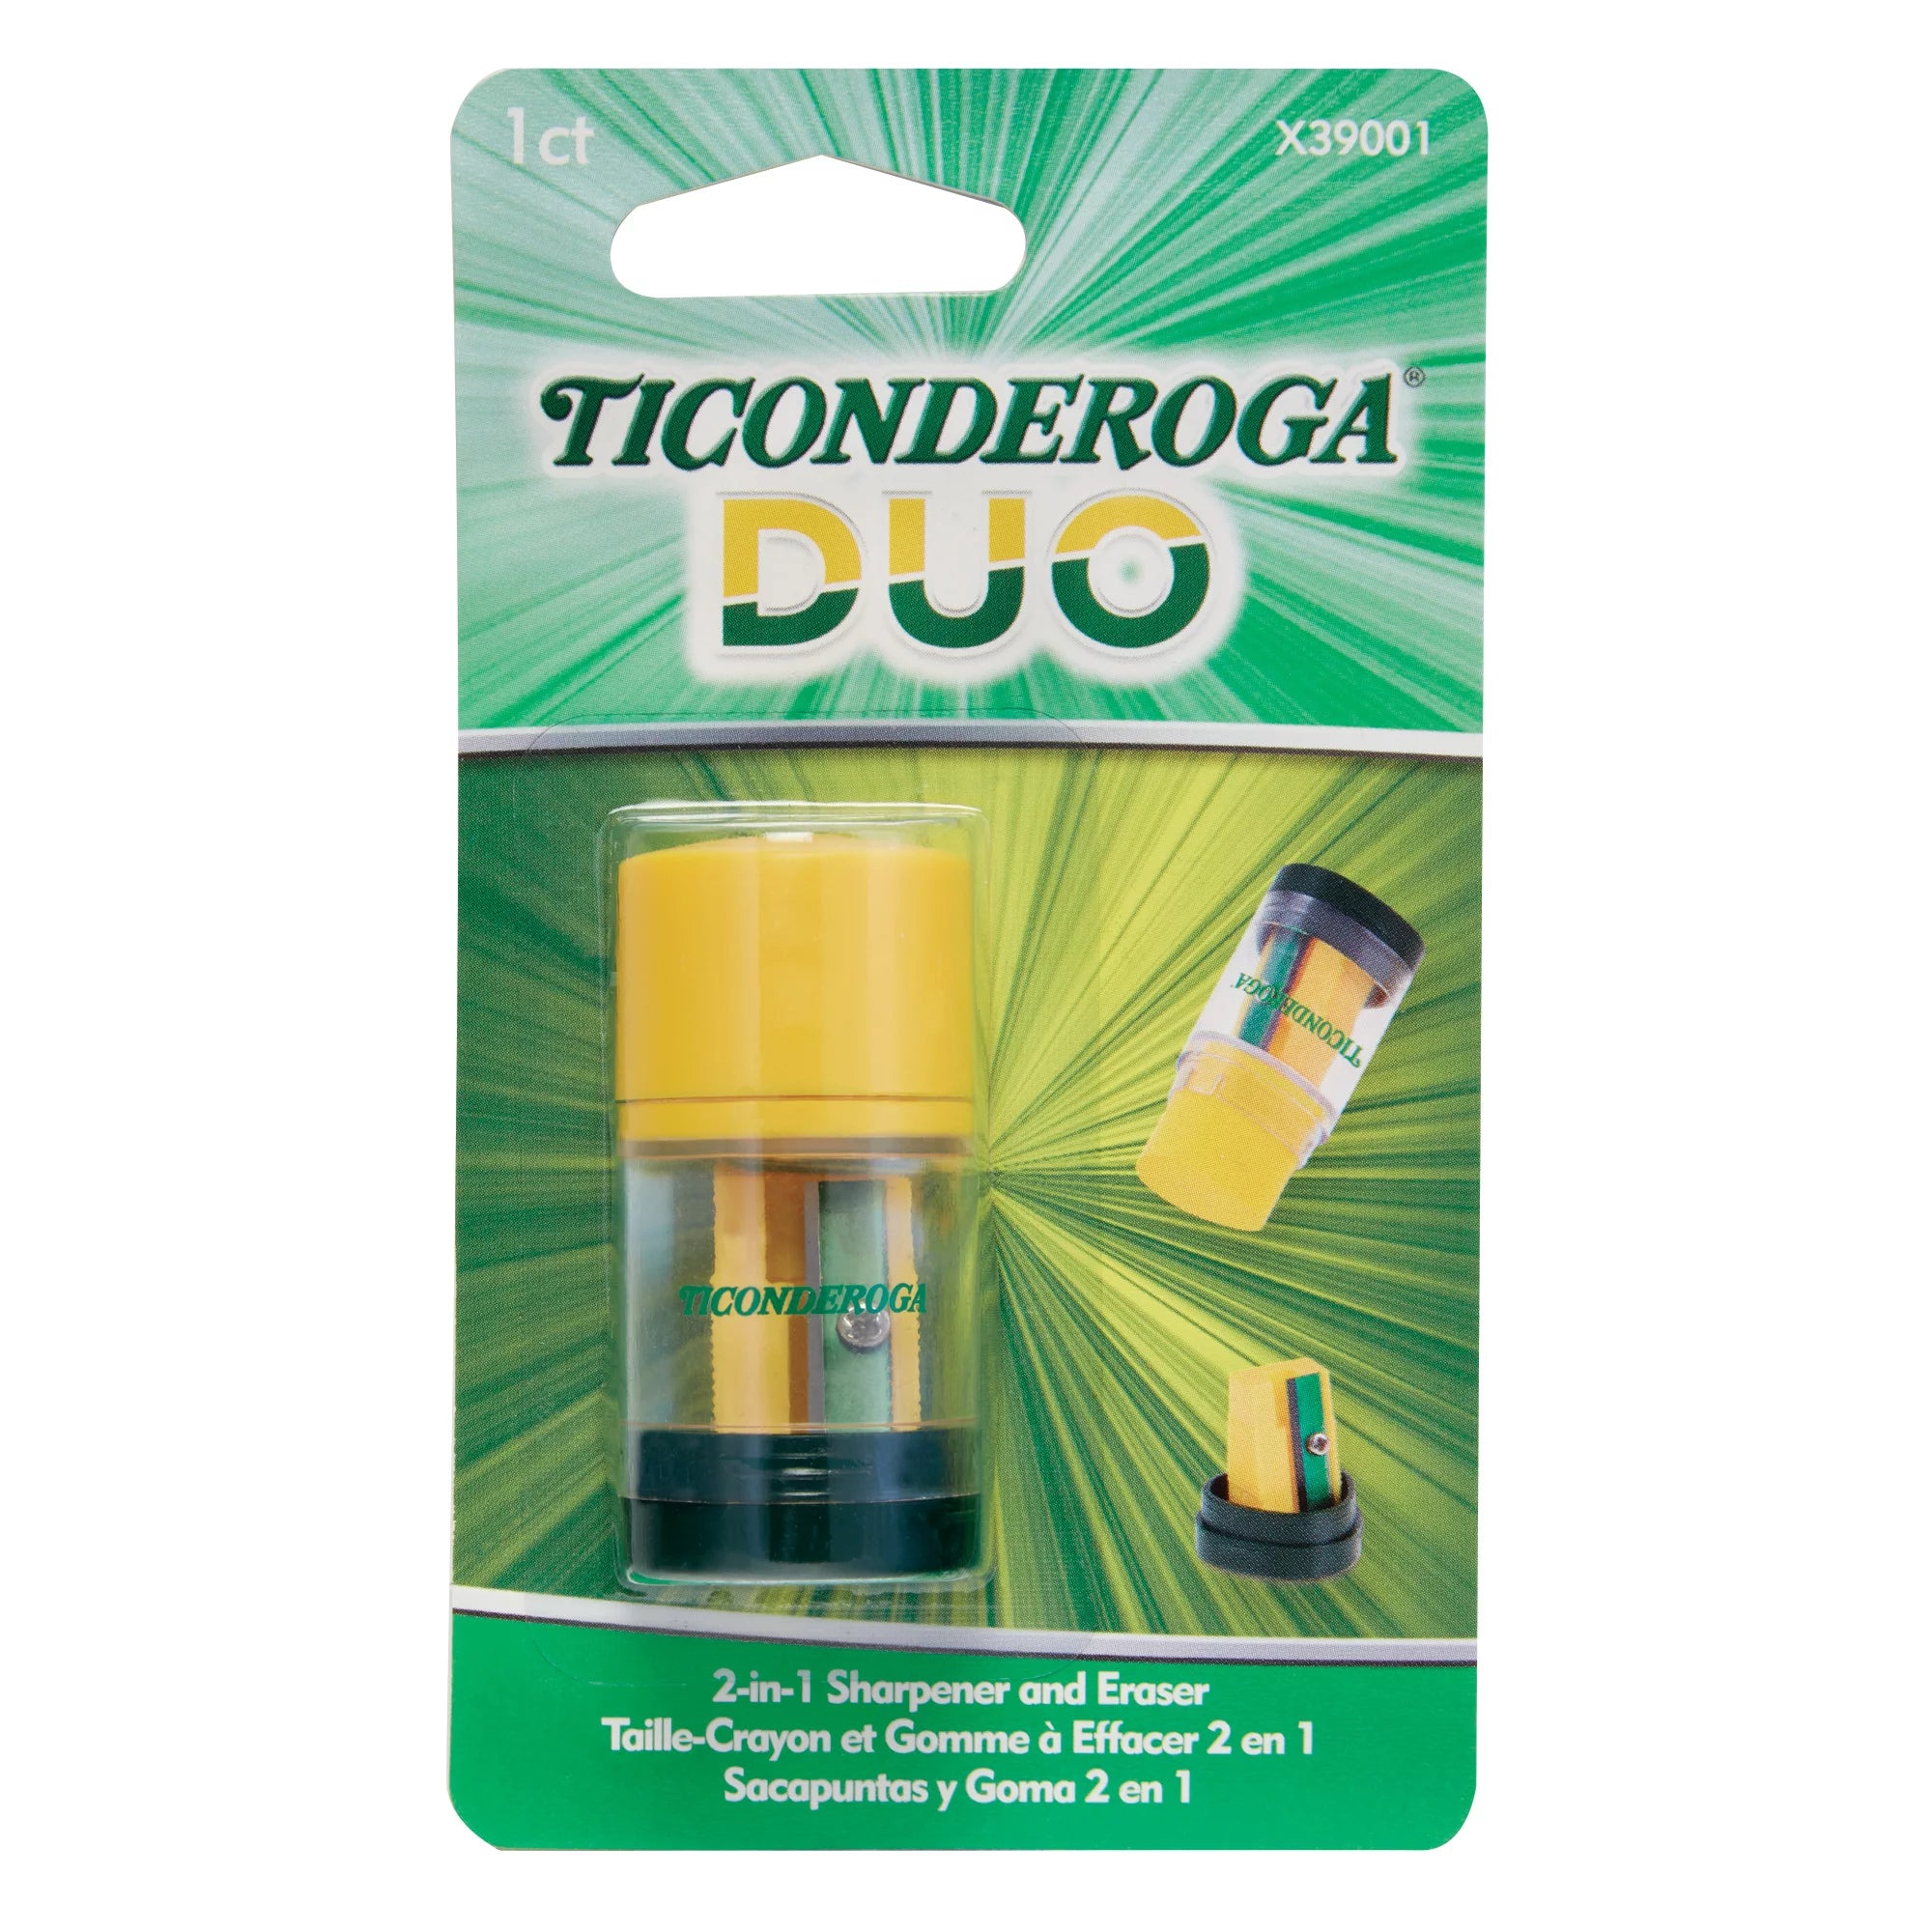 Ticonderoga Dixon Duo Sharpener and Eraser (X 39001)